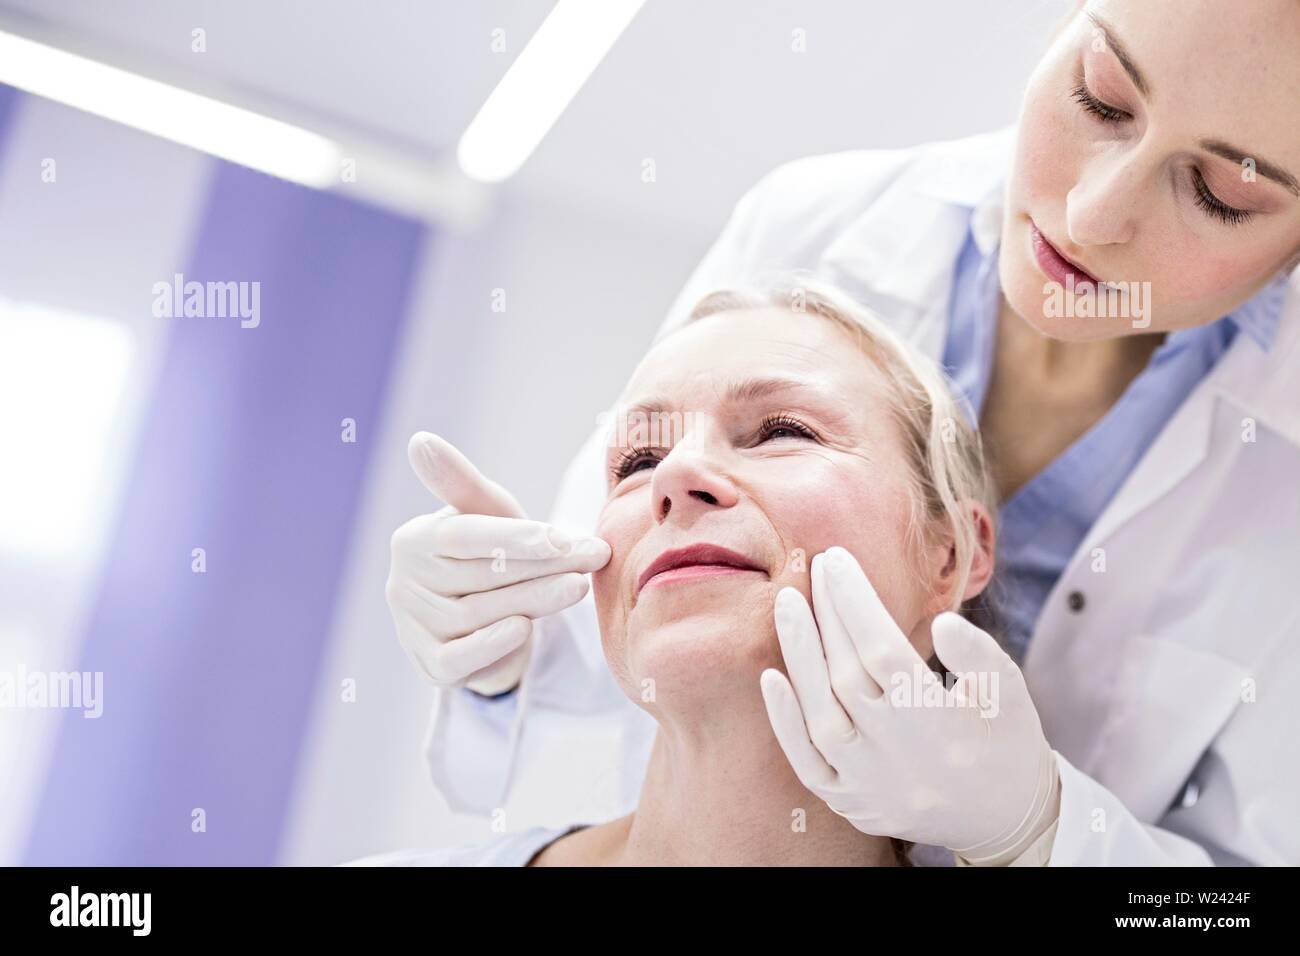 Junge weibliche Arzt prüft das Gesicht des Patienten. Stockfoto